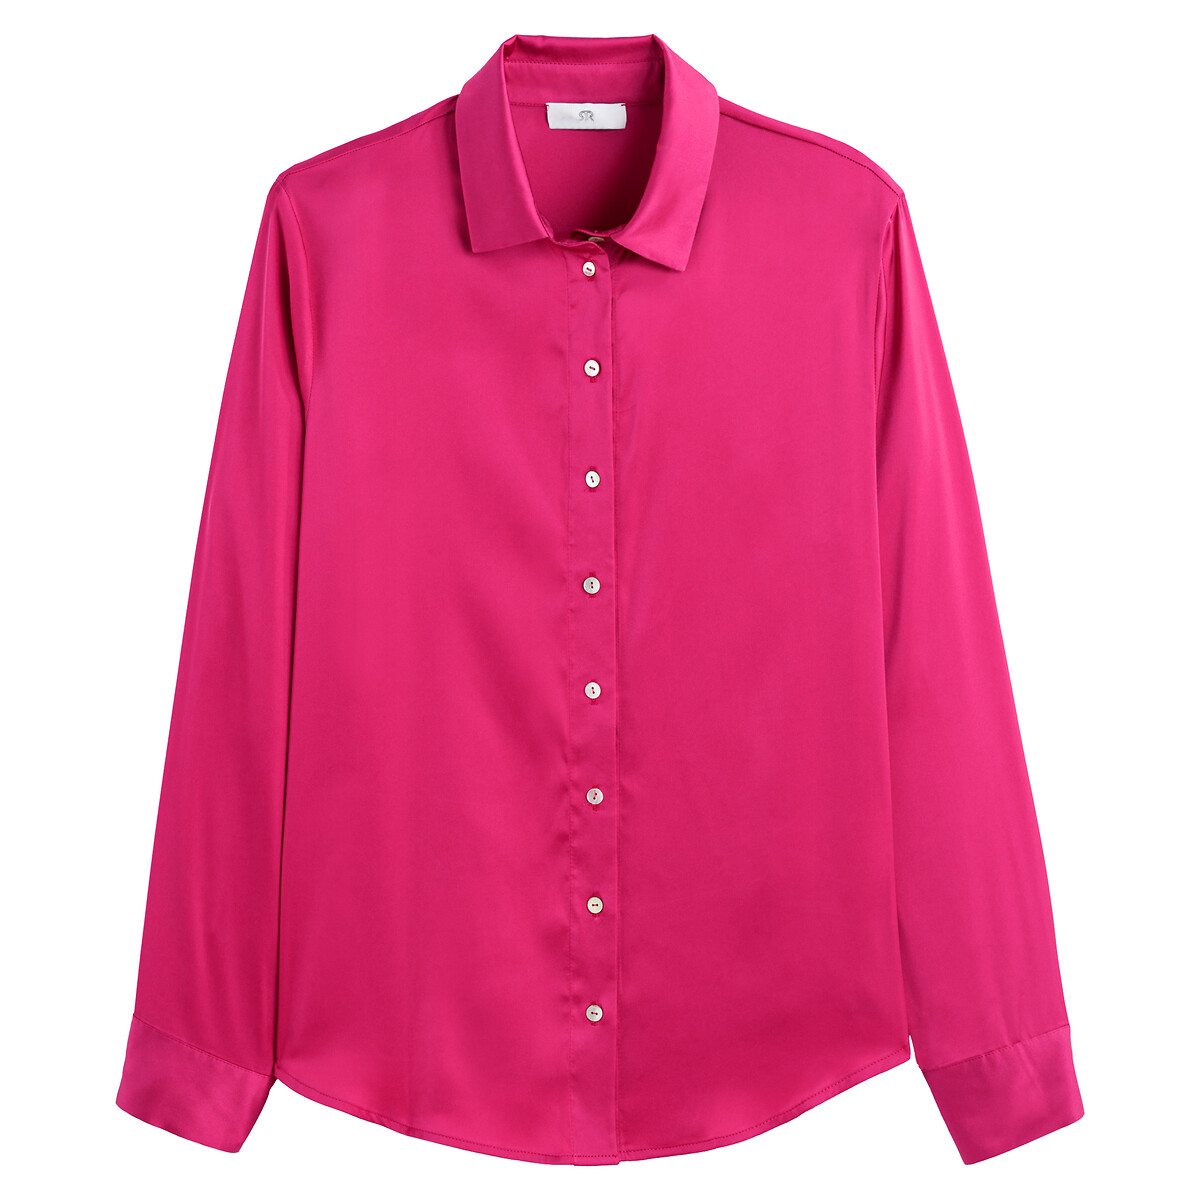 Рубашка С длинными рукавами атласная 50 (FR) - 56 (RUS) розовый LaRedoute, размер 50 (FR) - 56 (RUS) Рубашка С длинными рукавами атласная 50 (FR) - 56 (RUS) розовый - фото 5